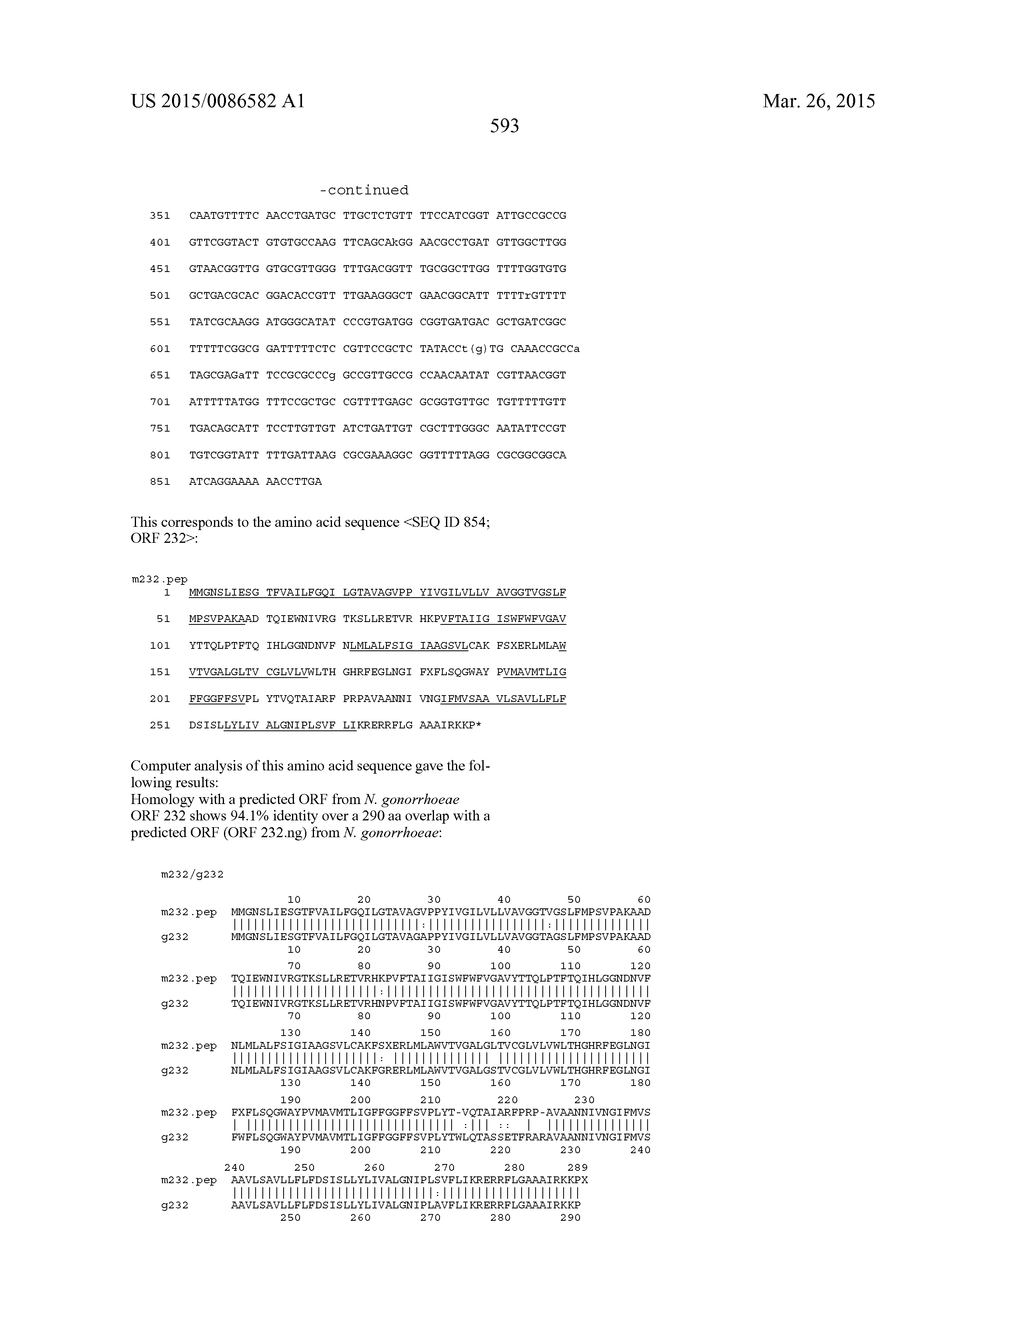 NEISSERIA MENINGITIDIS ANTIGENS AND COMPOSITIONS - diagram, schematic, and image 625